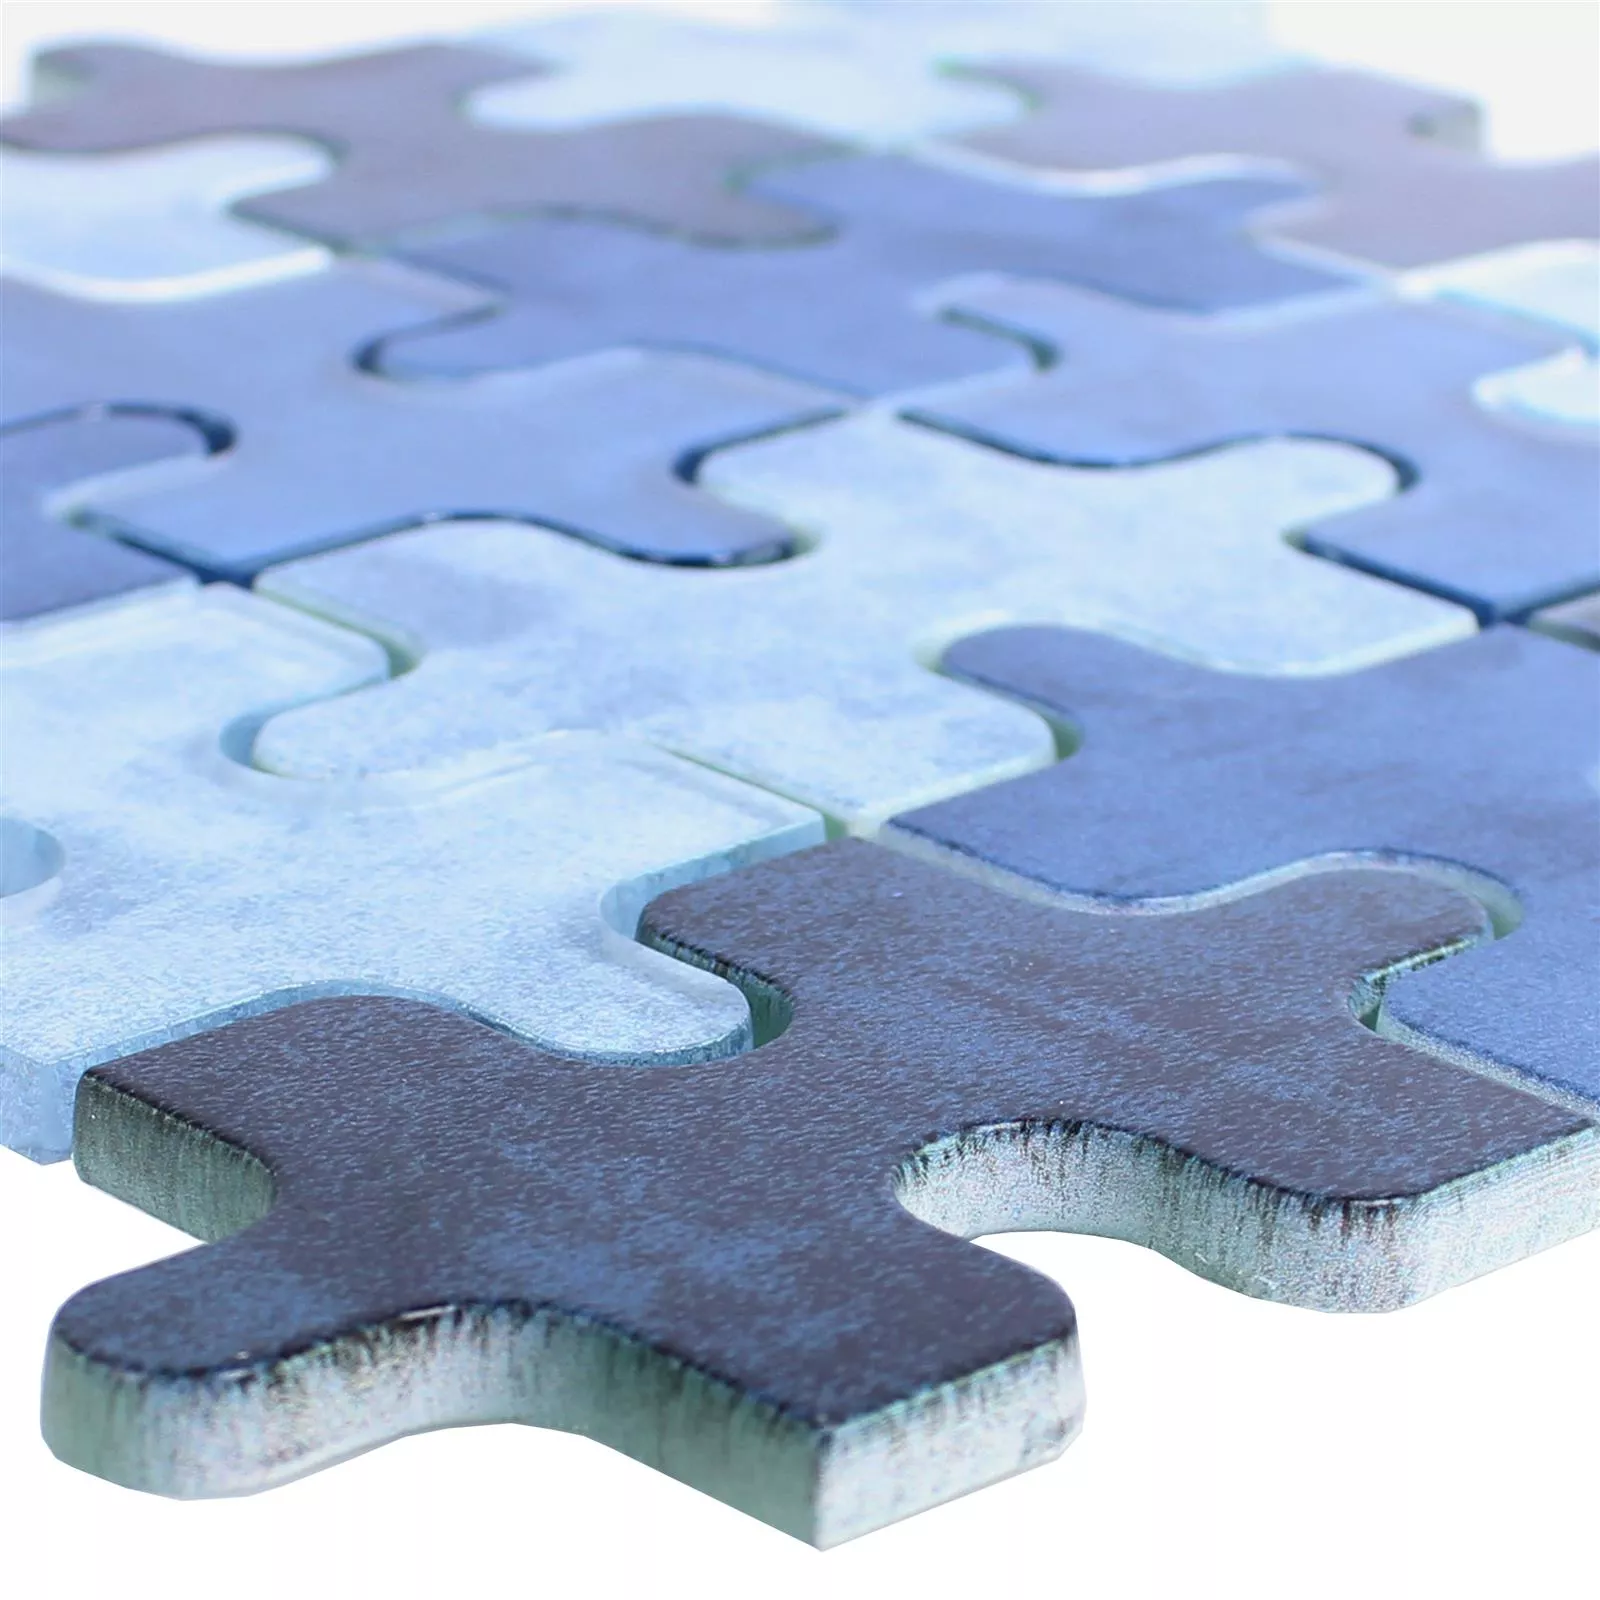 Sample Glass Mosaic Tiles Puzzle Blue